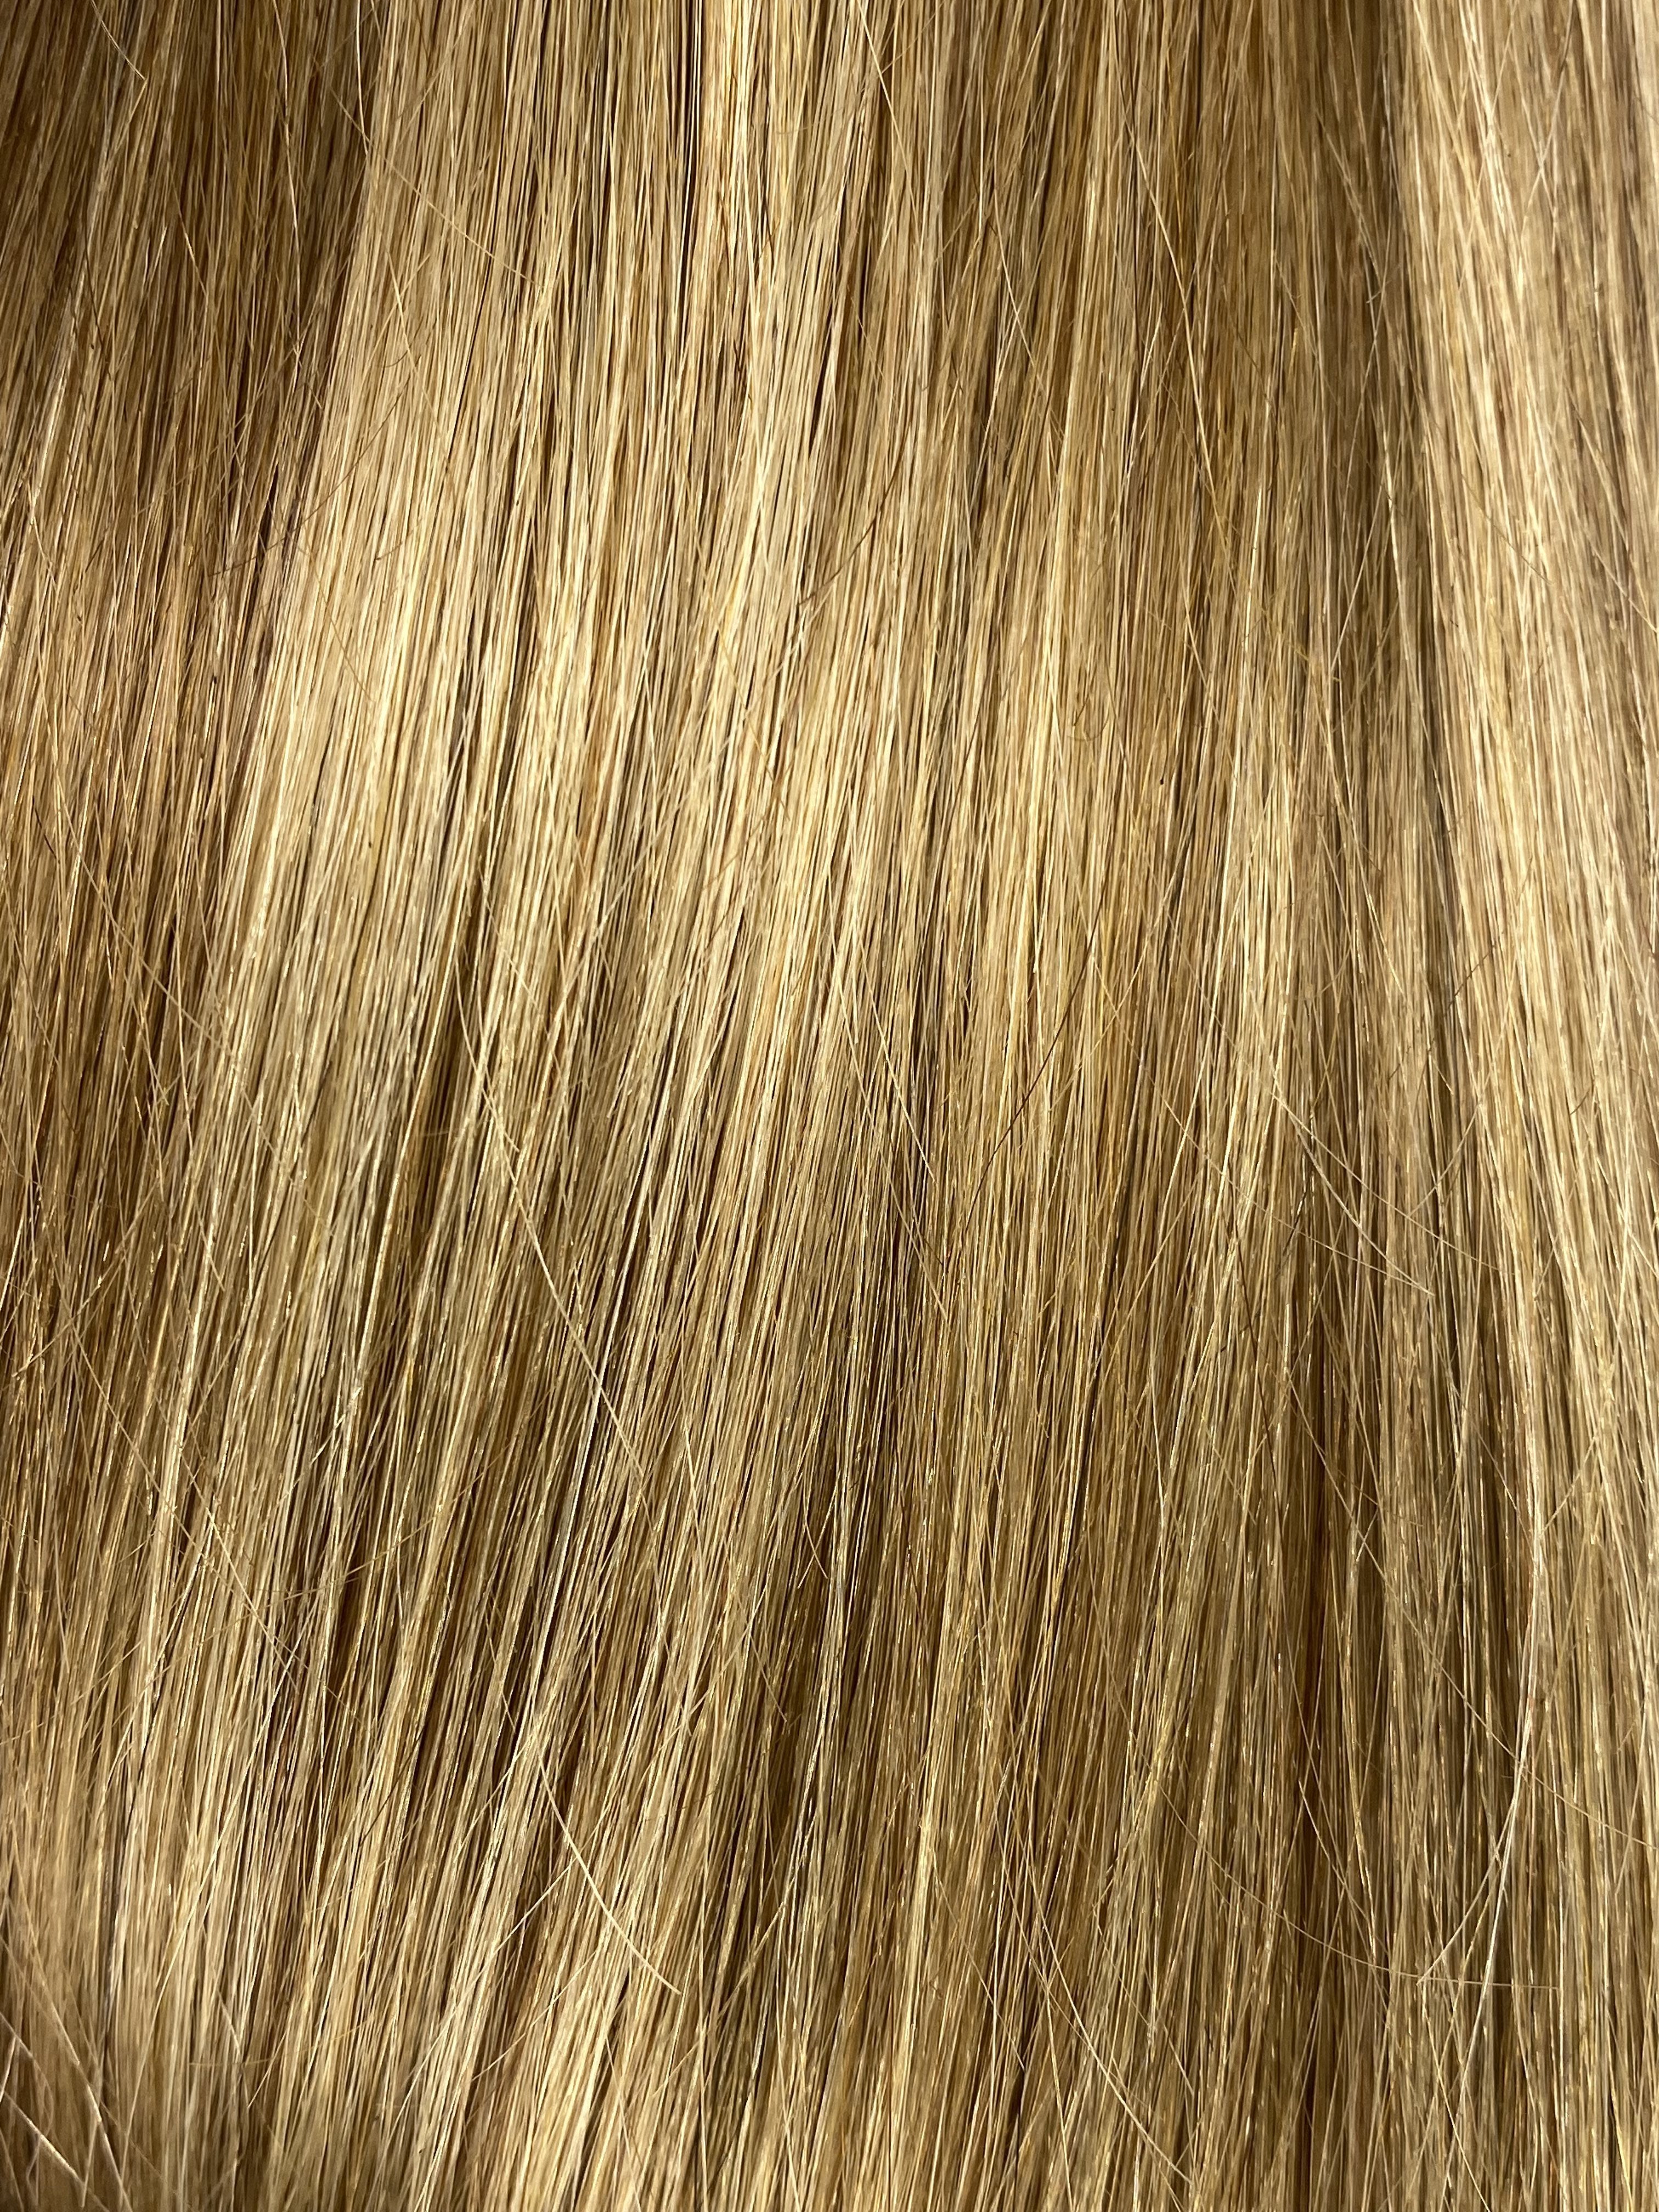 Velo Sale #8/16 - 16 inches - Dark Blonde/Light Golden Blonde